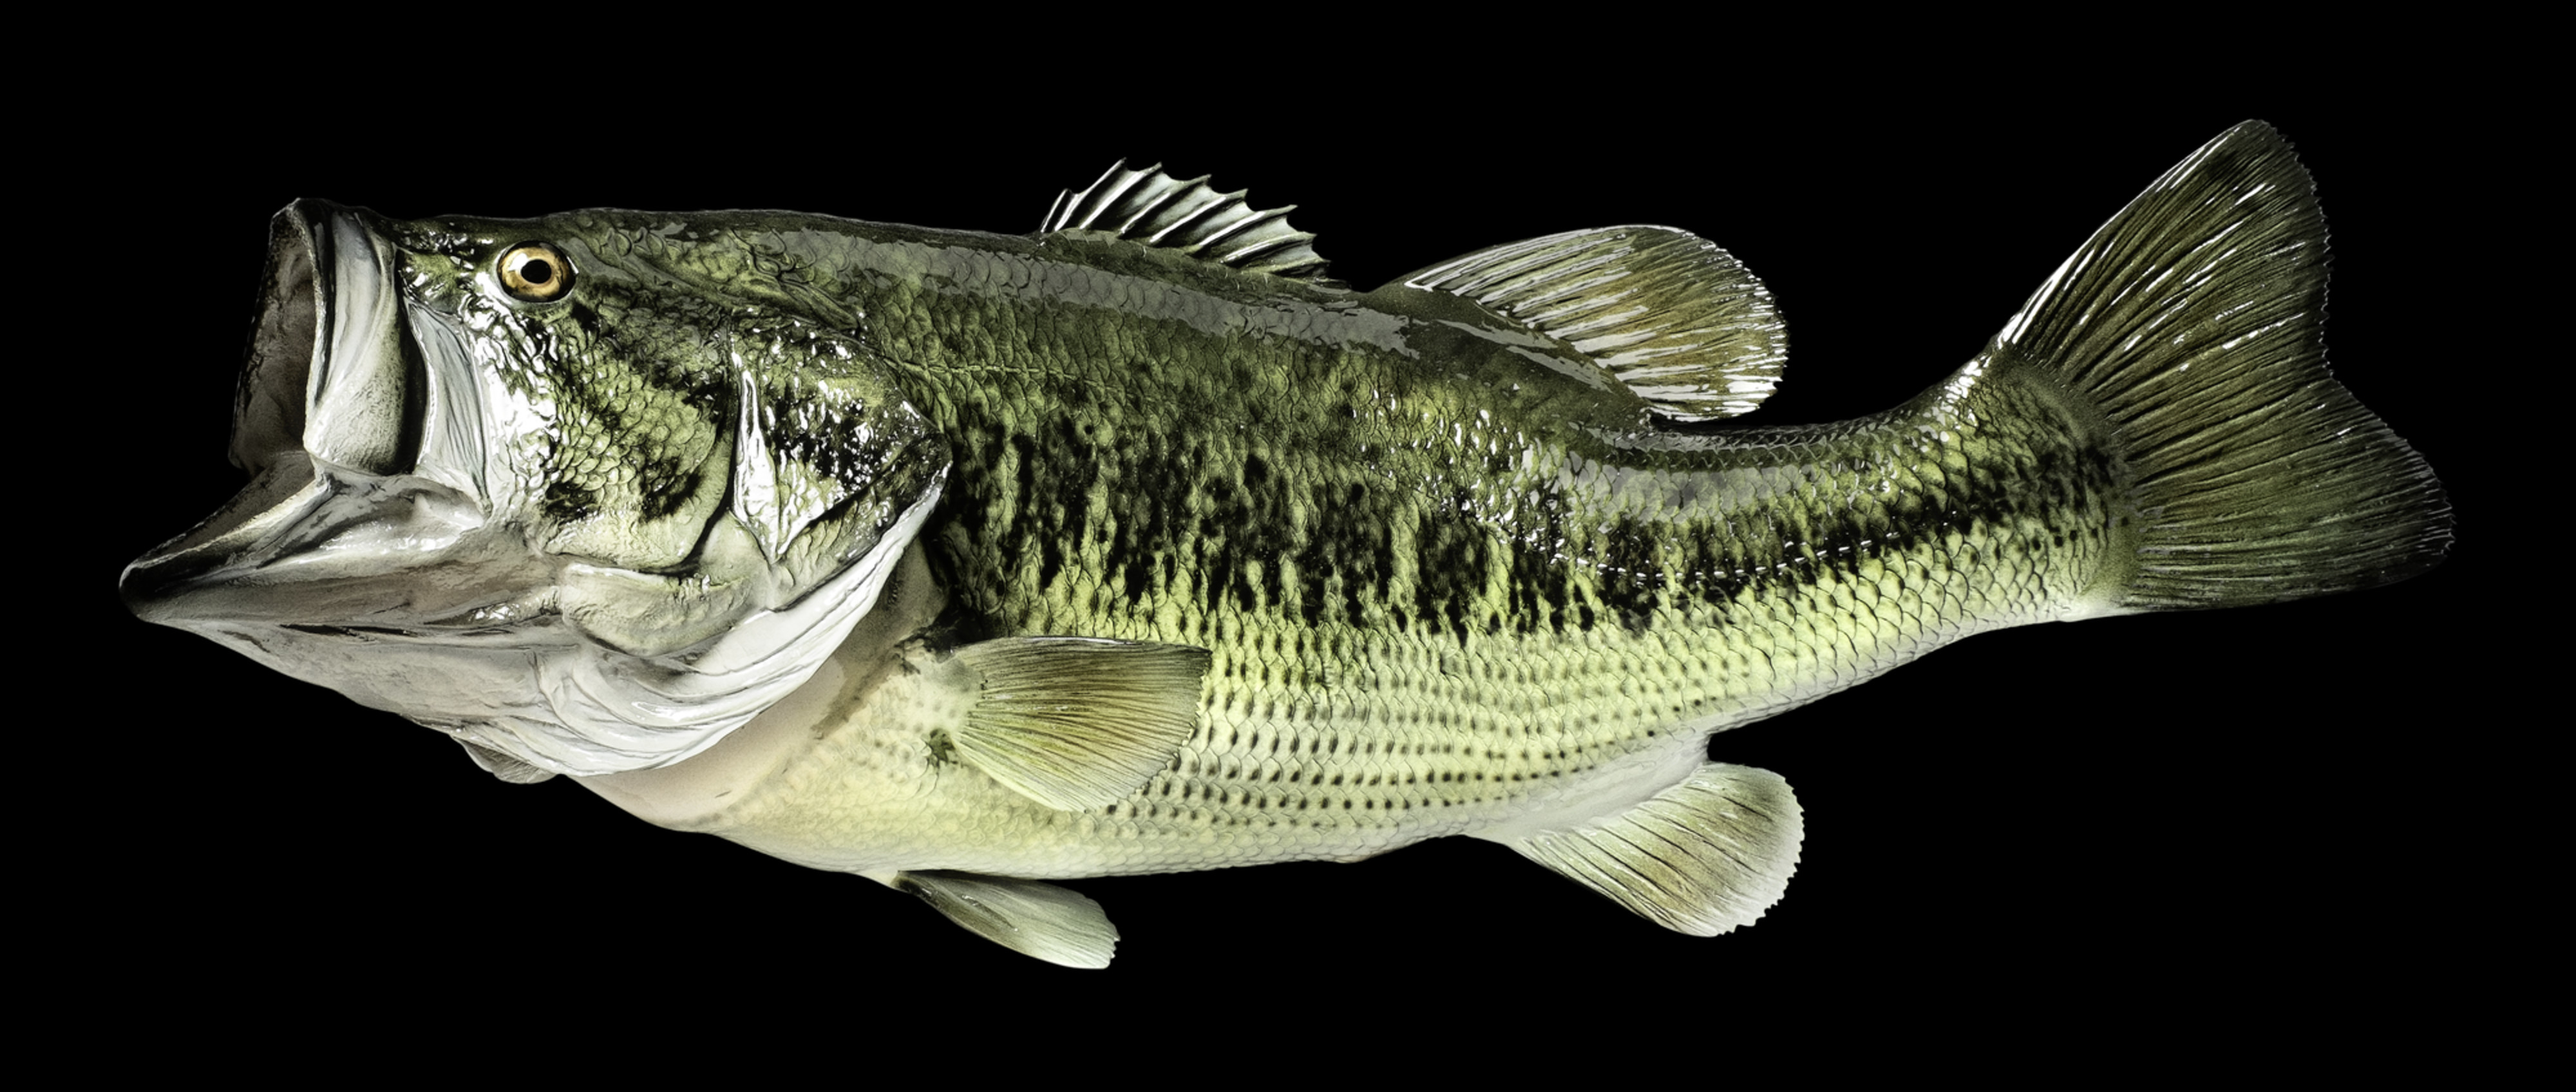 large mouth bass fish